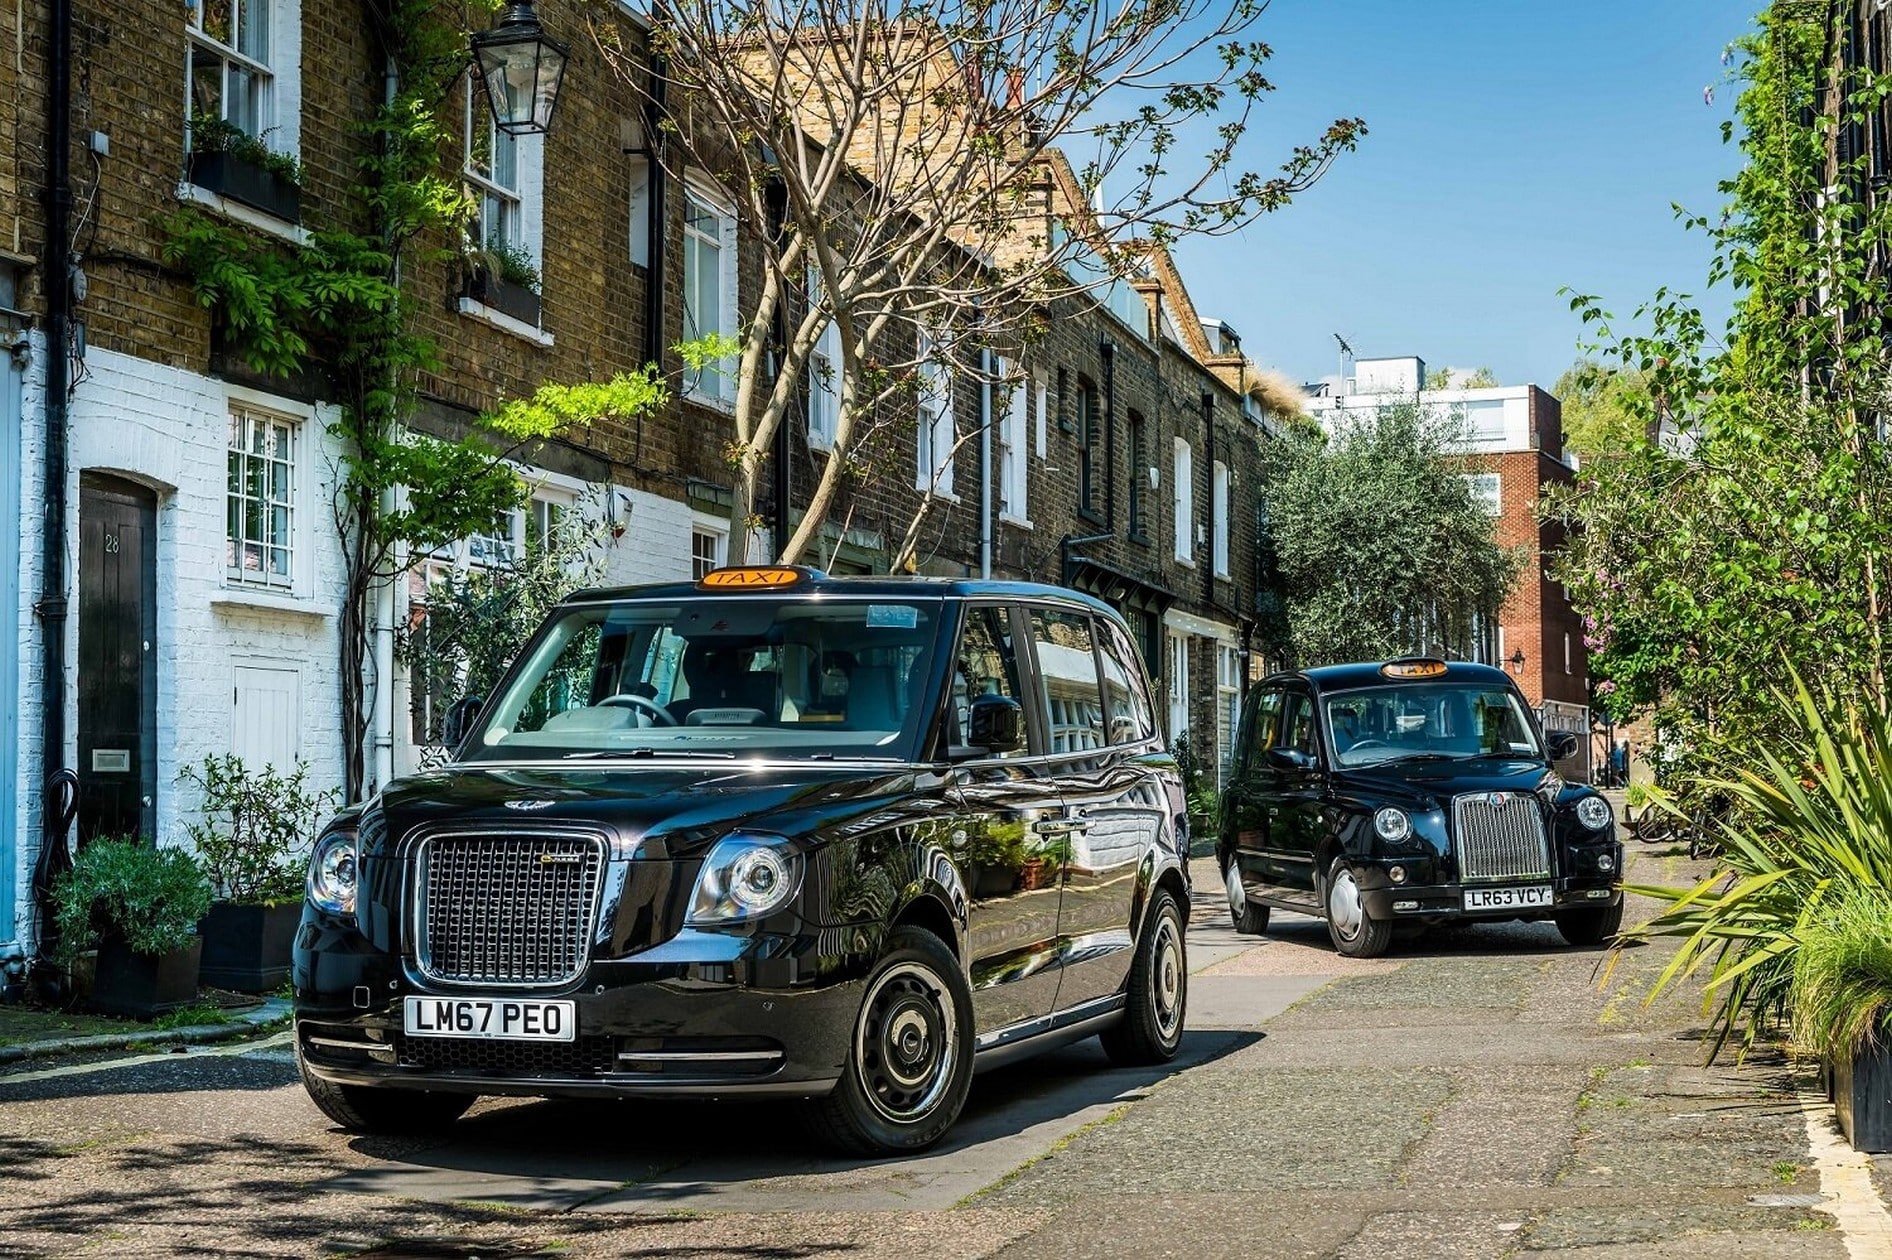 Londres électrise ses Taxis Mythiques : L'Ère des Black Cabs 2.0